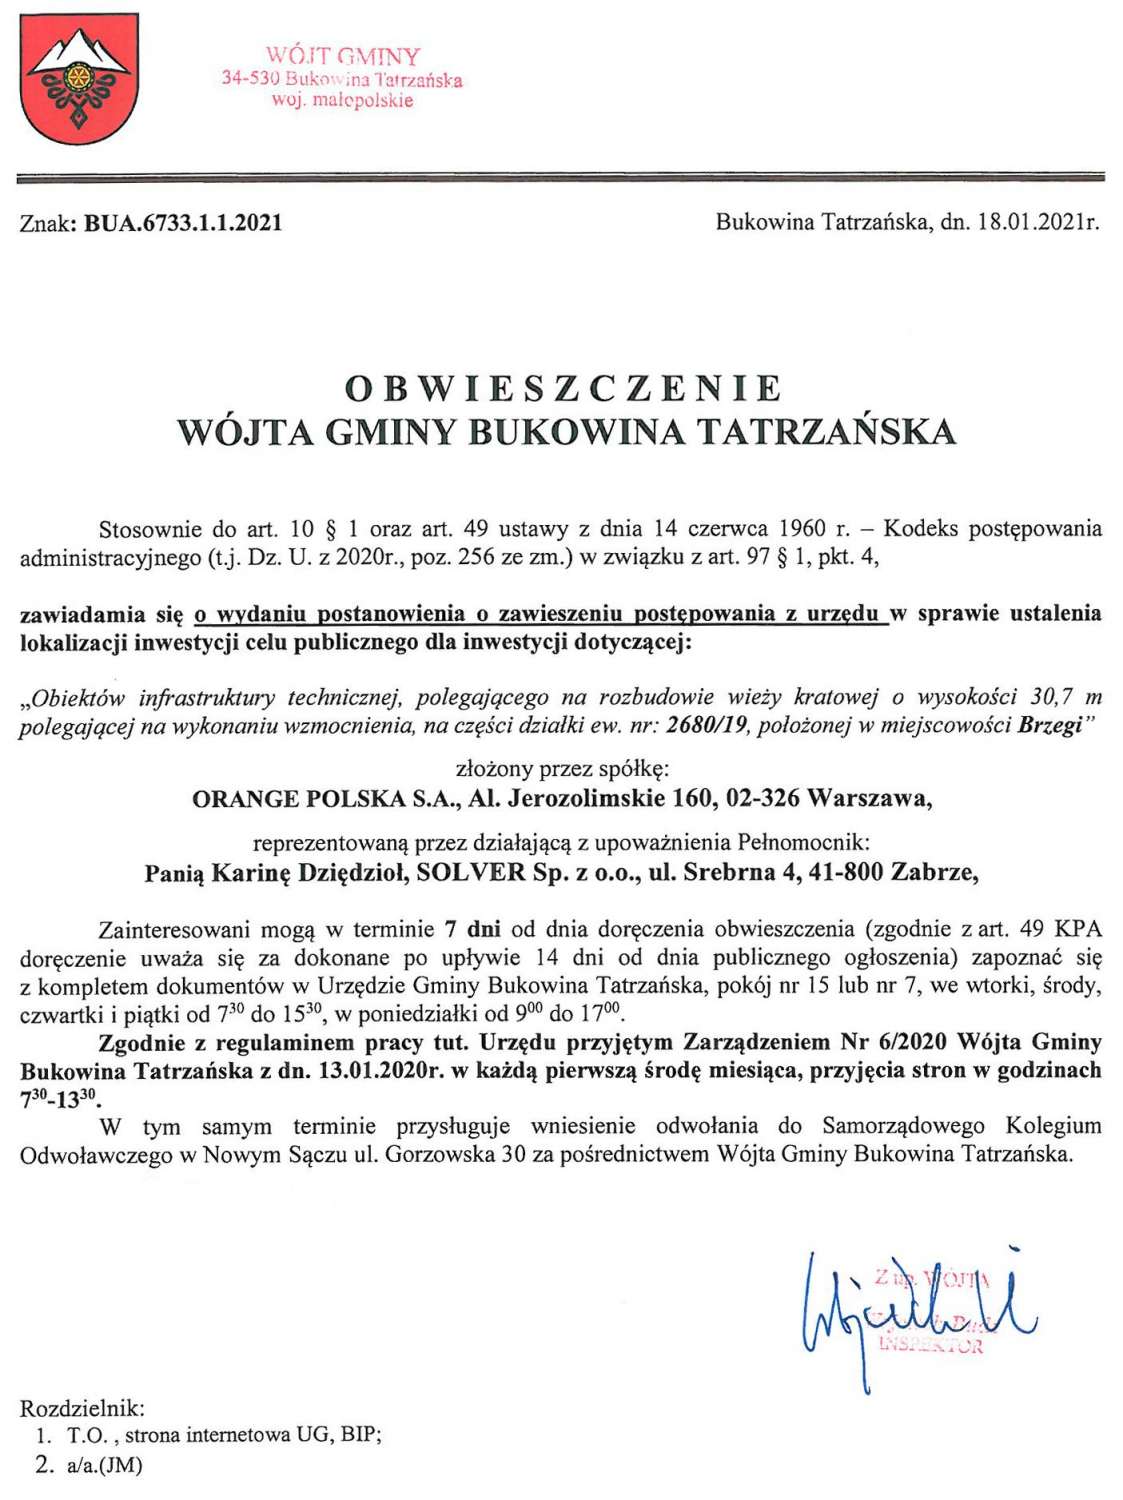 Obwieszczenie Wójta Gminy Bukowina Tatrzańska BUA 6733.1.1.2021